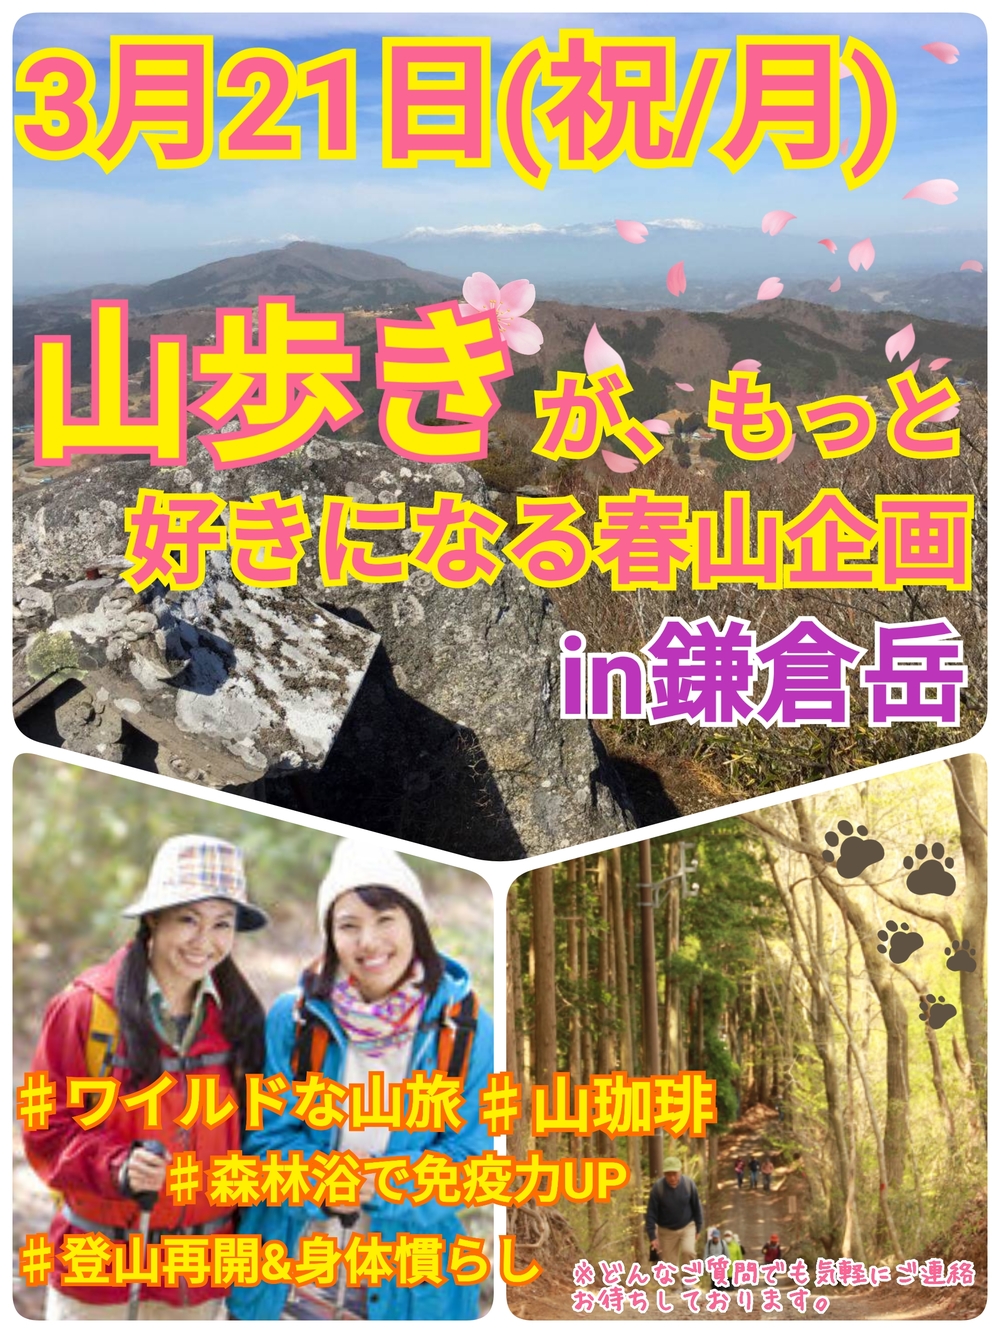 【3月21日(祝・月)】山歩きがもっと好きになる春山企画IN鎌倉岳